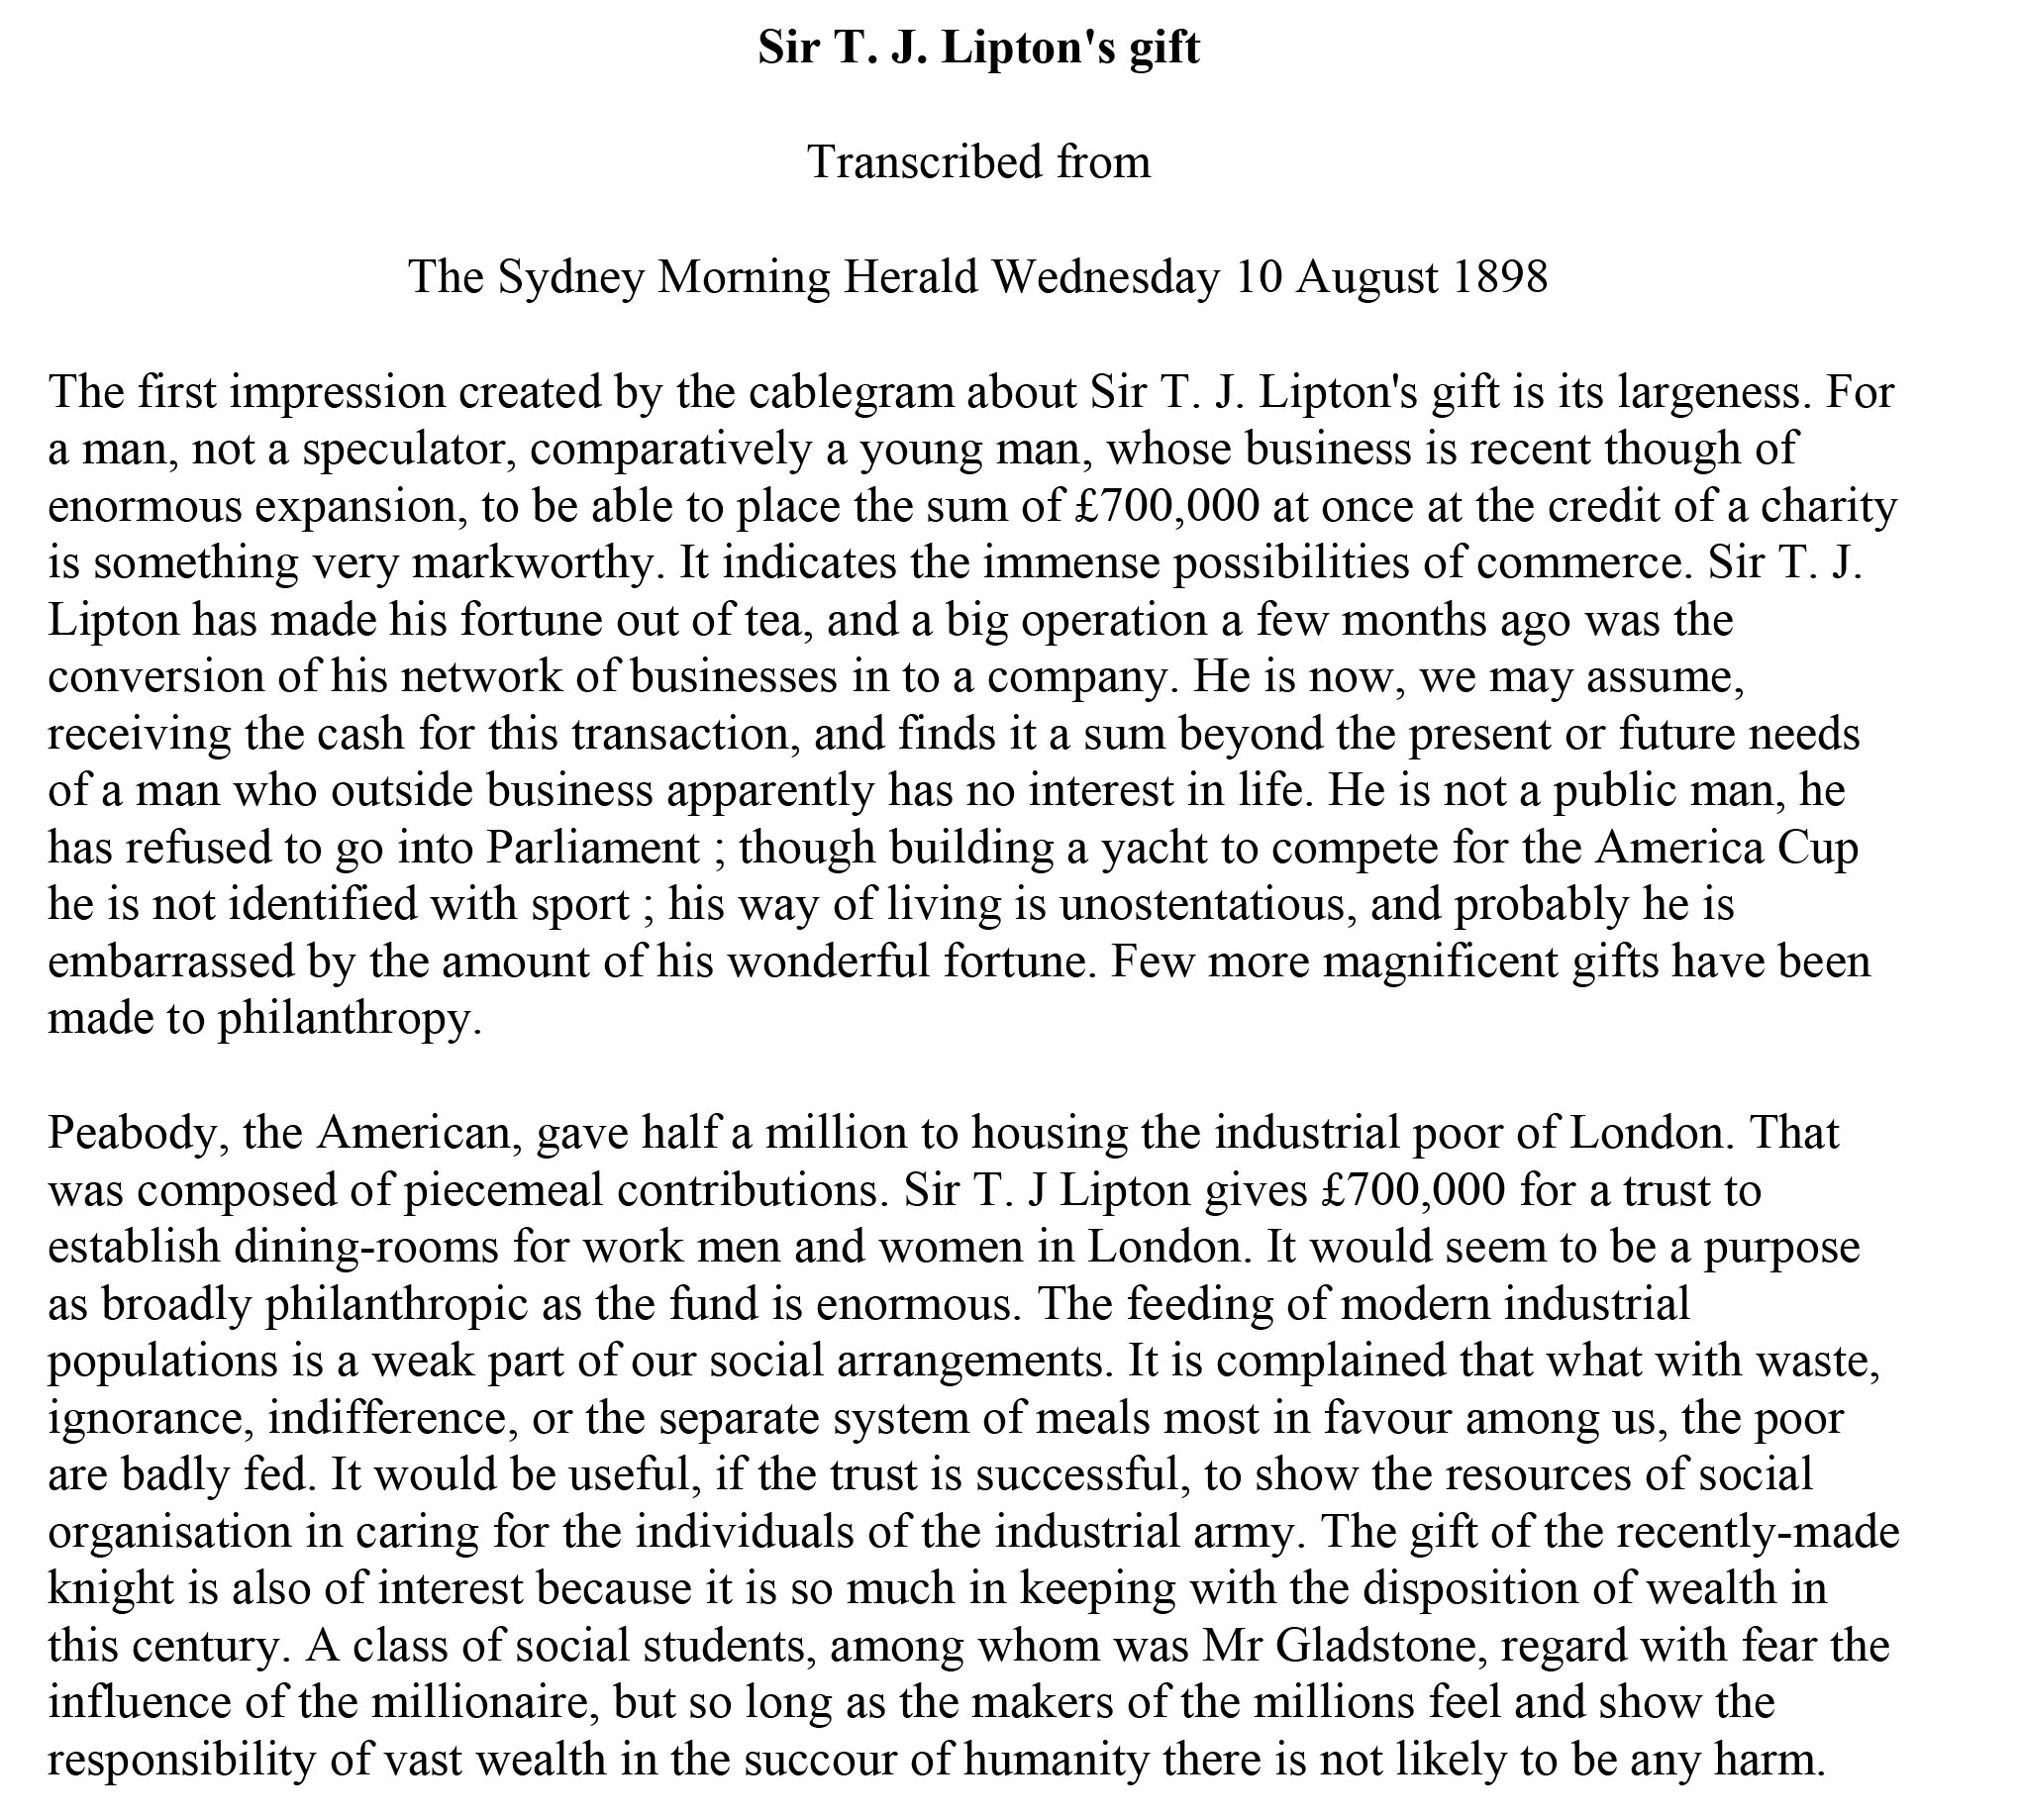 04.Sir T.J. Lipton's Gift